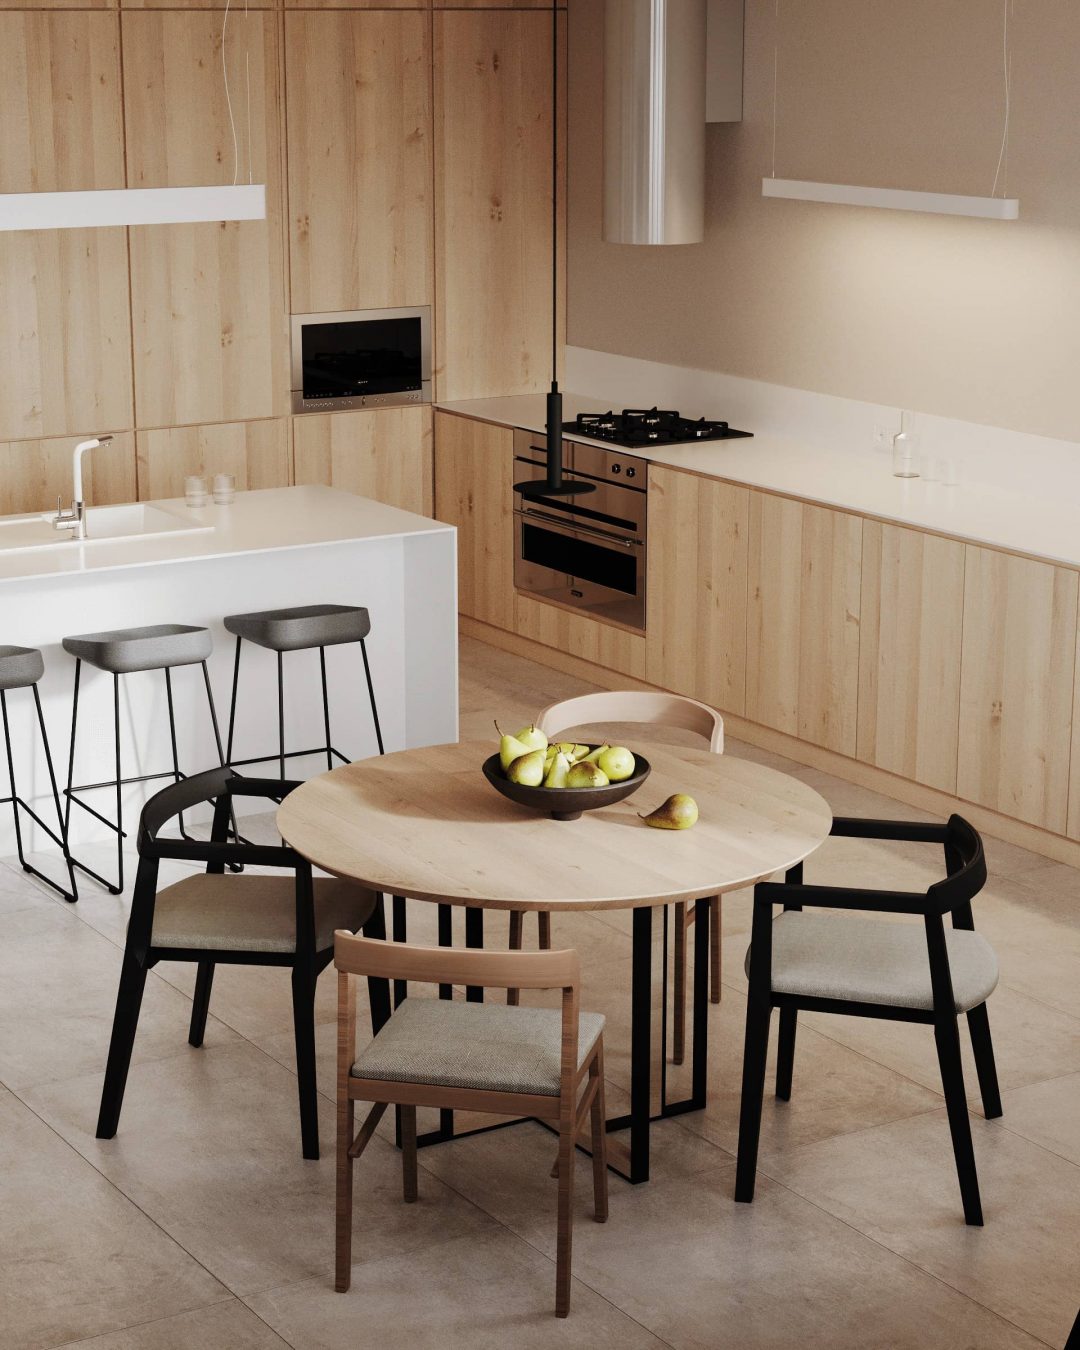 Thiết kế nội thất nhà bếp mang nét yên bình với chất liệu chính là gỗ màu trắng be